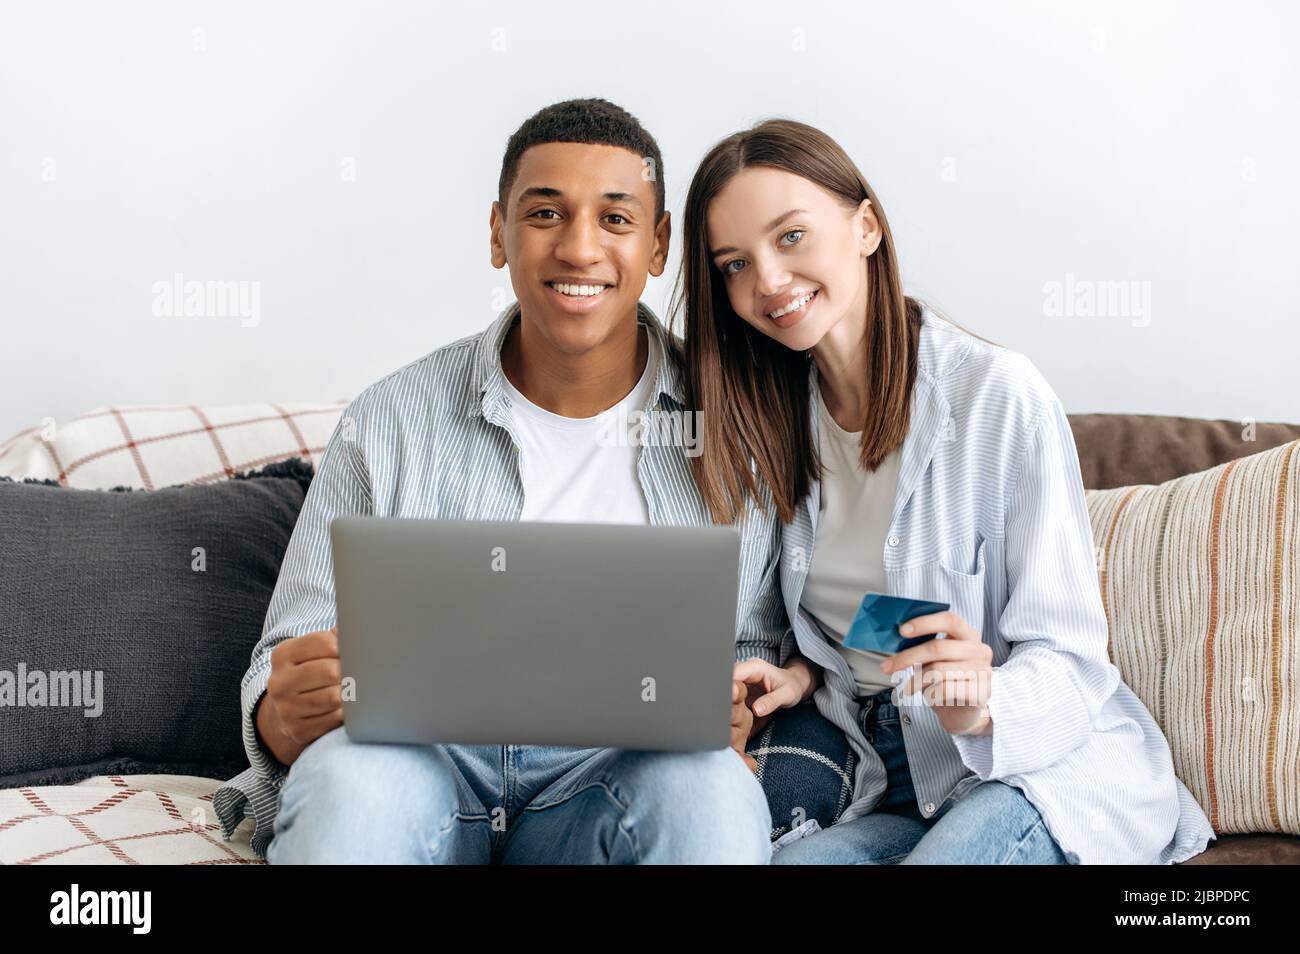 Online-Shopping. Glückliches, positives gemischtes Familienpaar, das auf einem Sofa im gemütlichen Wohnzimmer sitzt, Laptop und Kreditkarte zum Online-Shopping nutzt, Dinge für zu Hause kauft, Lieferung nach Hause bestellt, lächelt Stockfoto